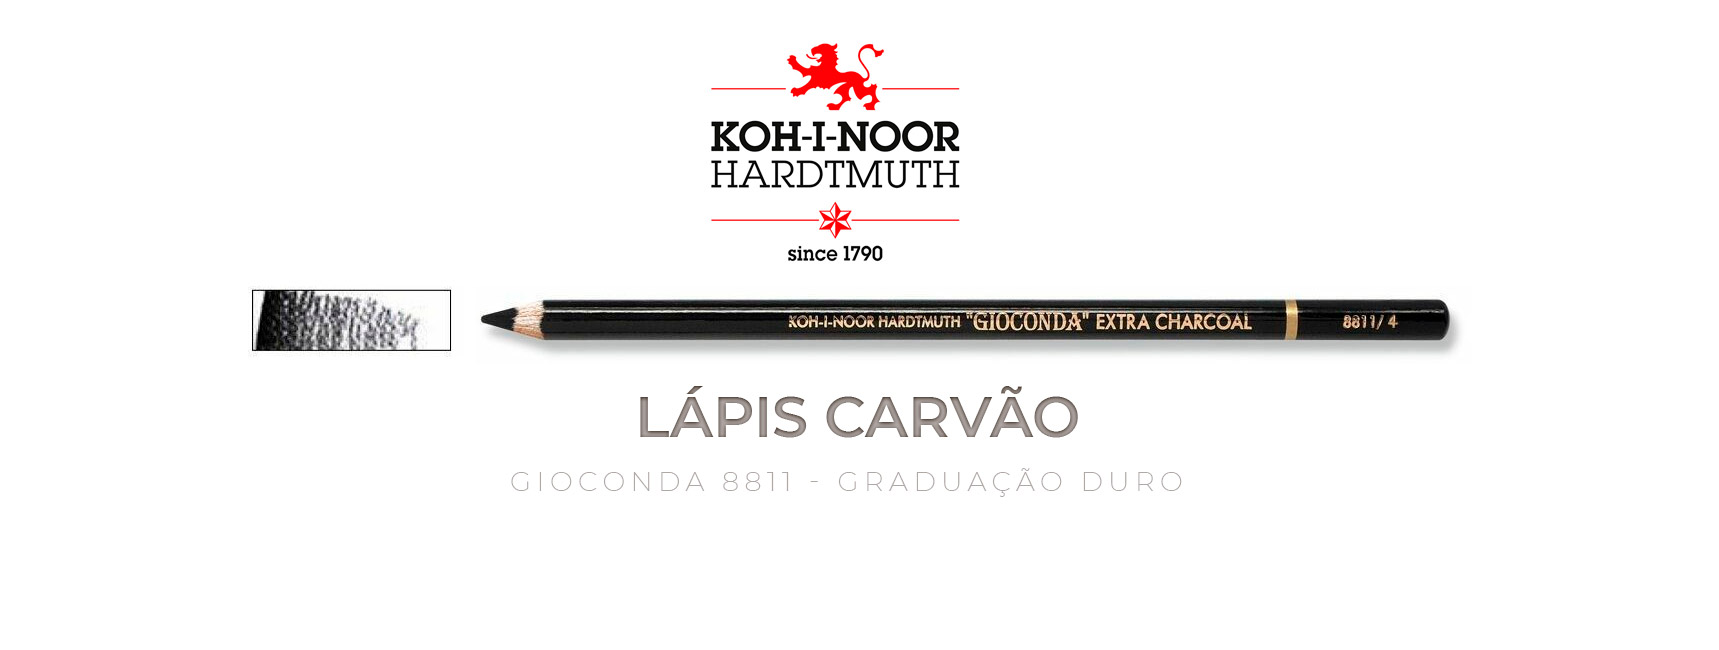 Lápis carvão preto graduação duro da Koh-I-Noor